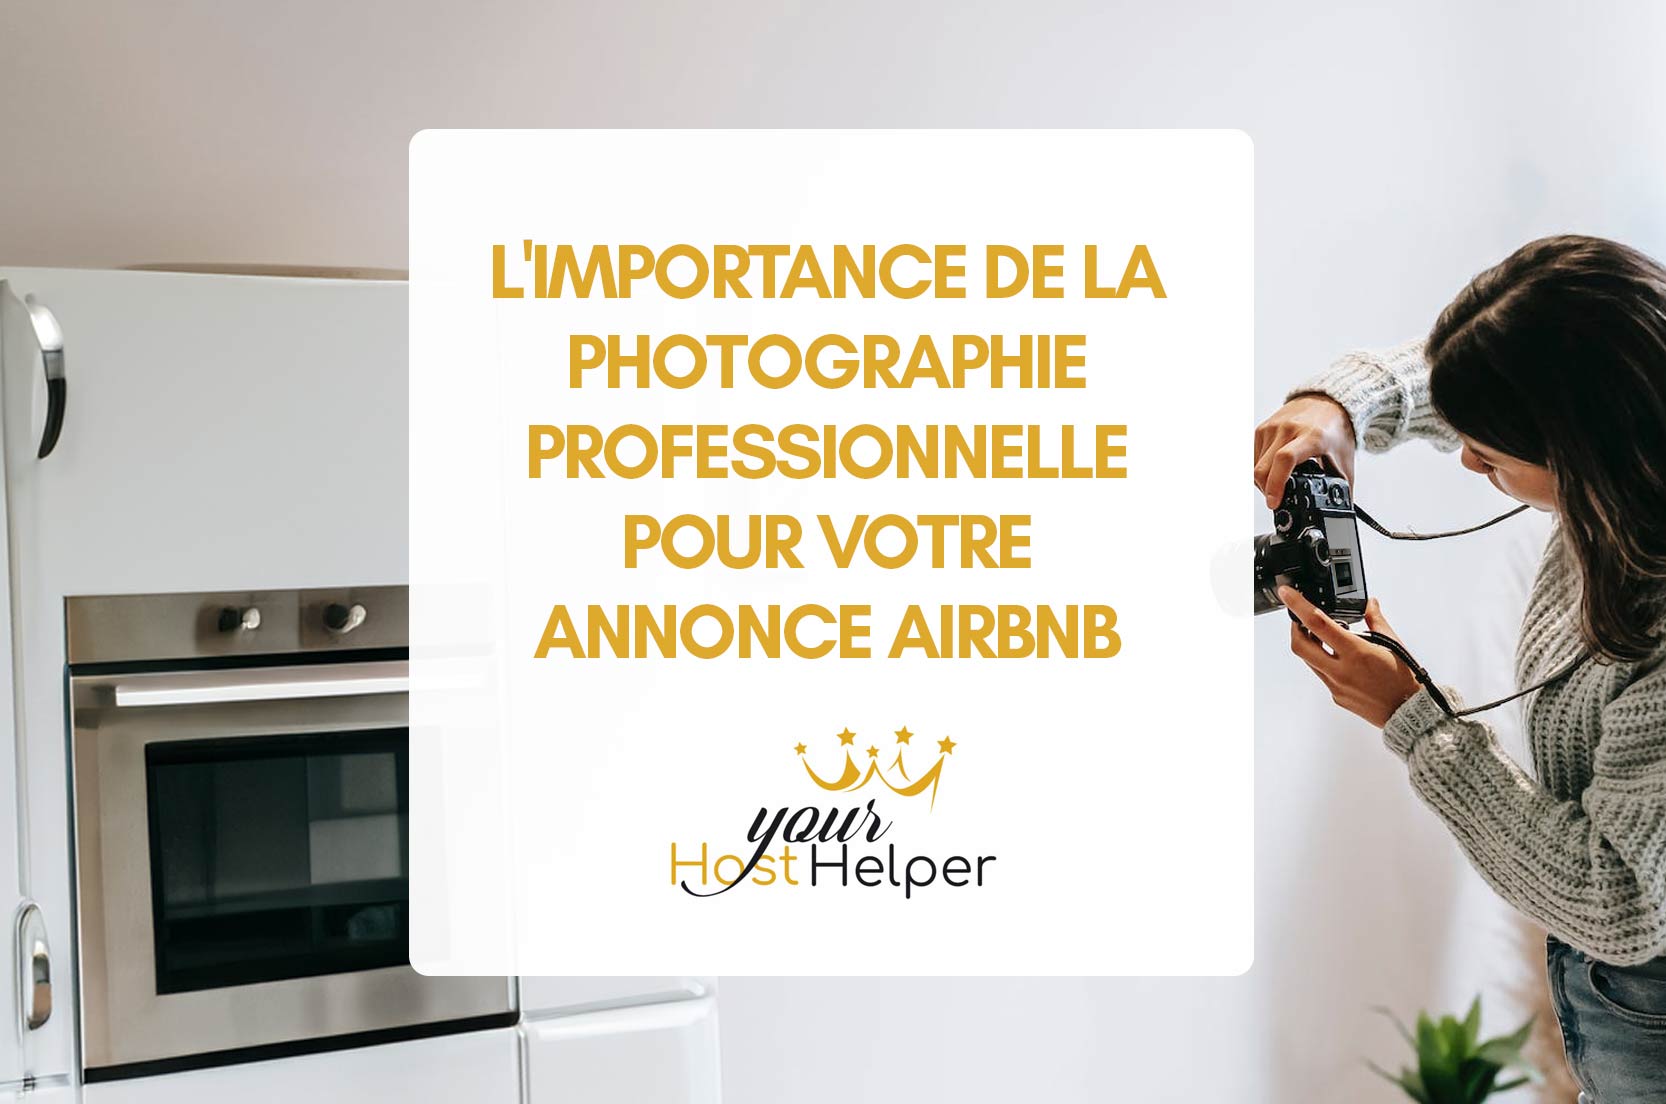 You are currently viewing L’importance de la photographie professionnelle pour votre annonce Airbnb